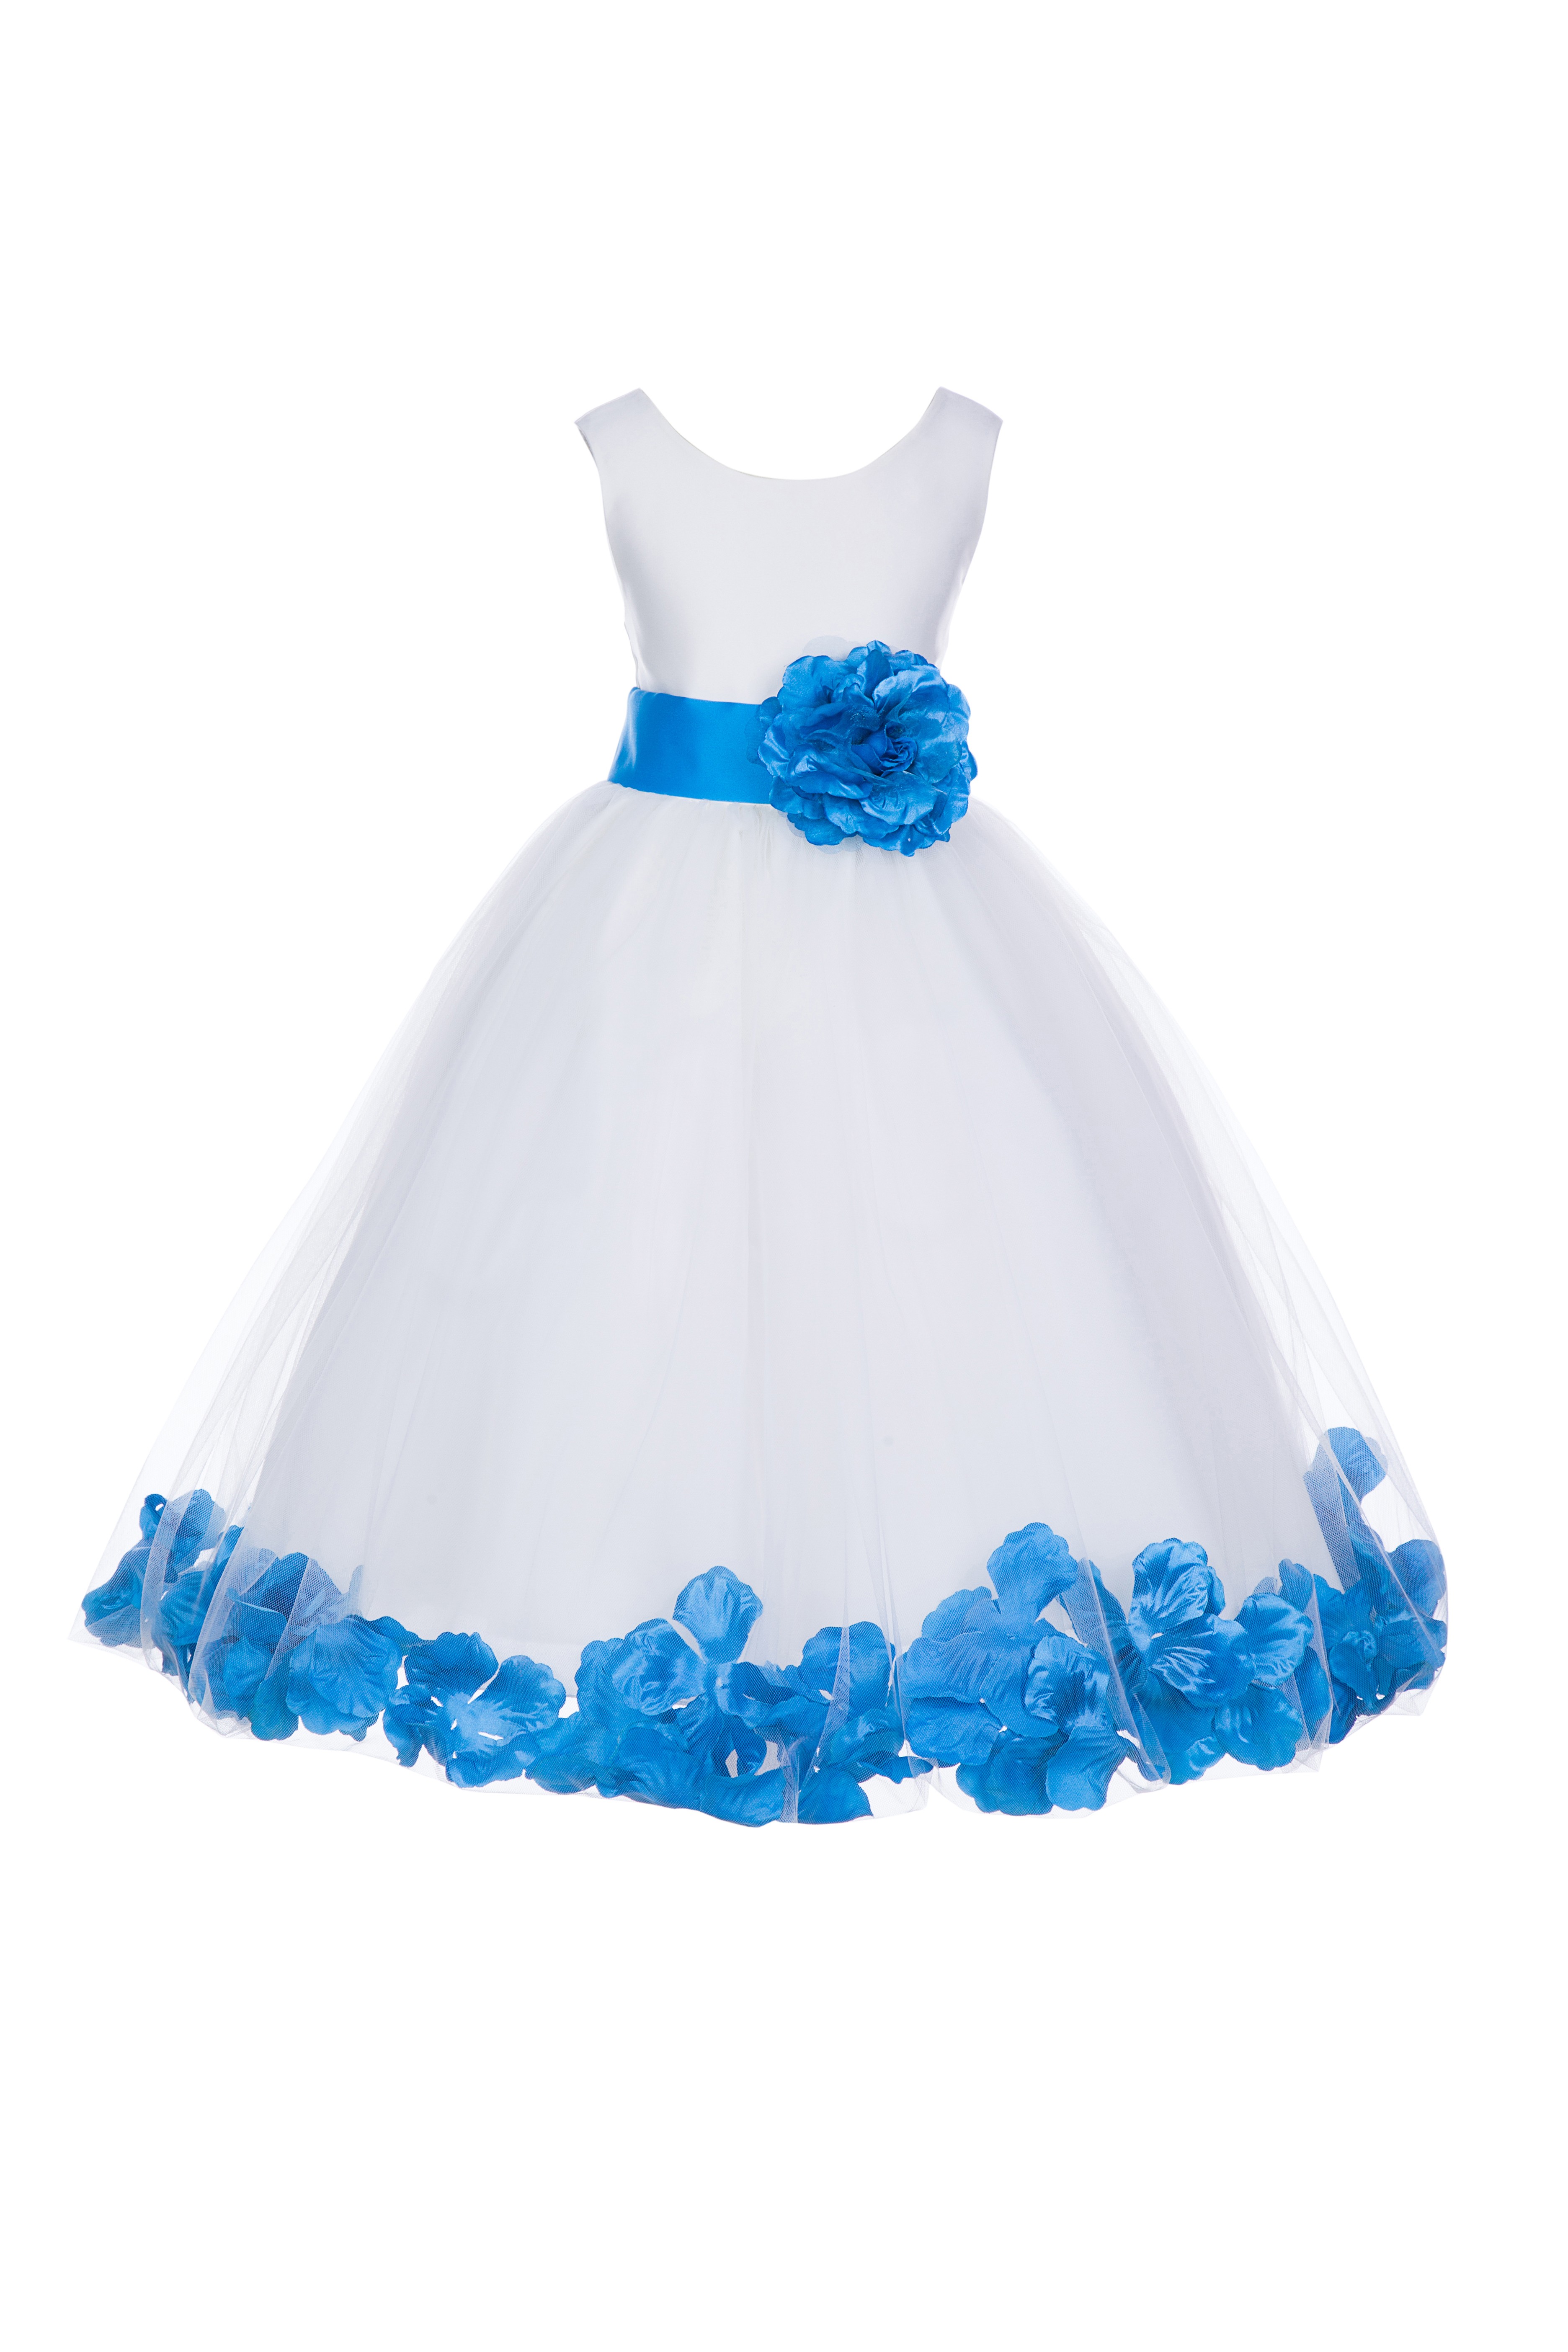 malibu blue flower girl dresses